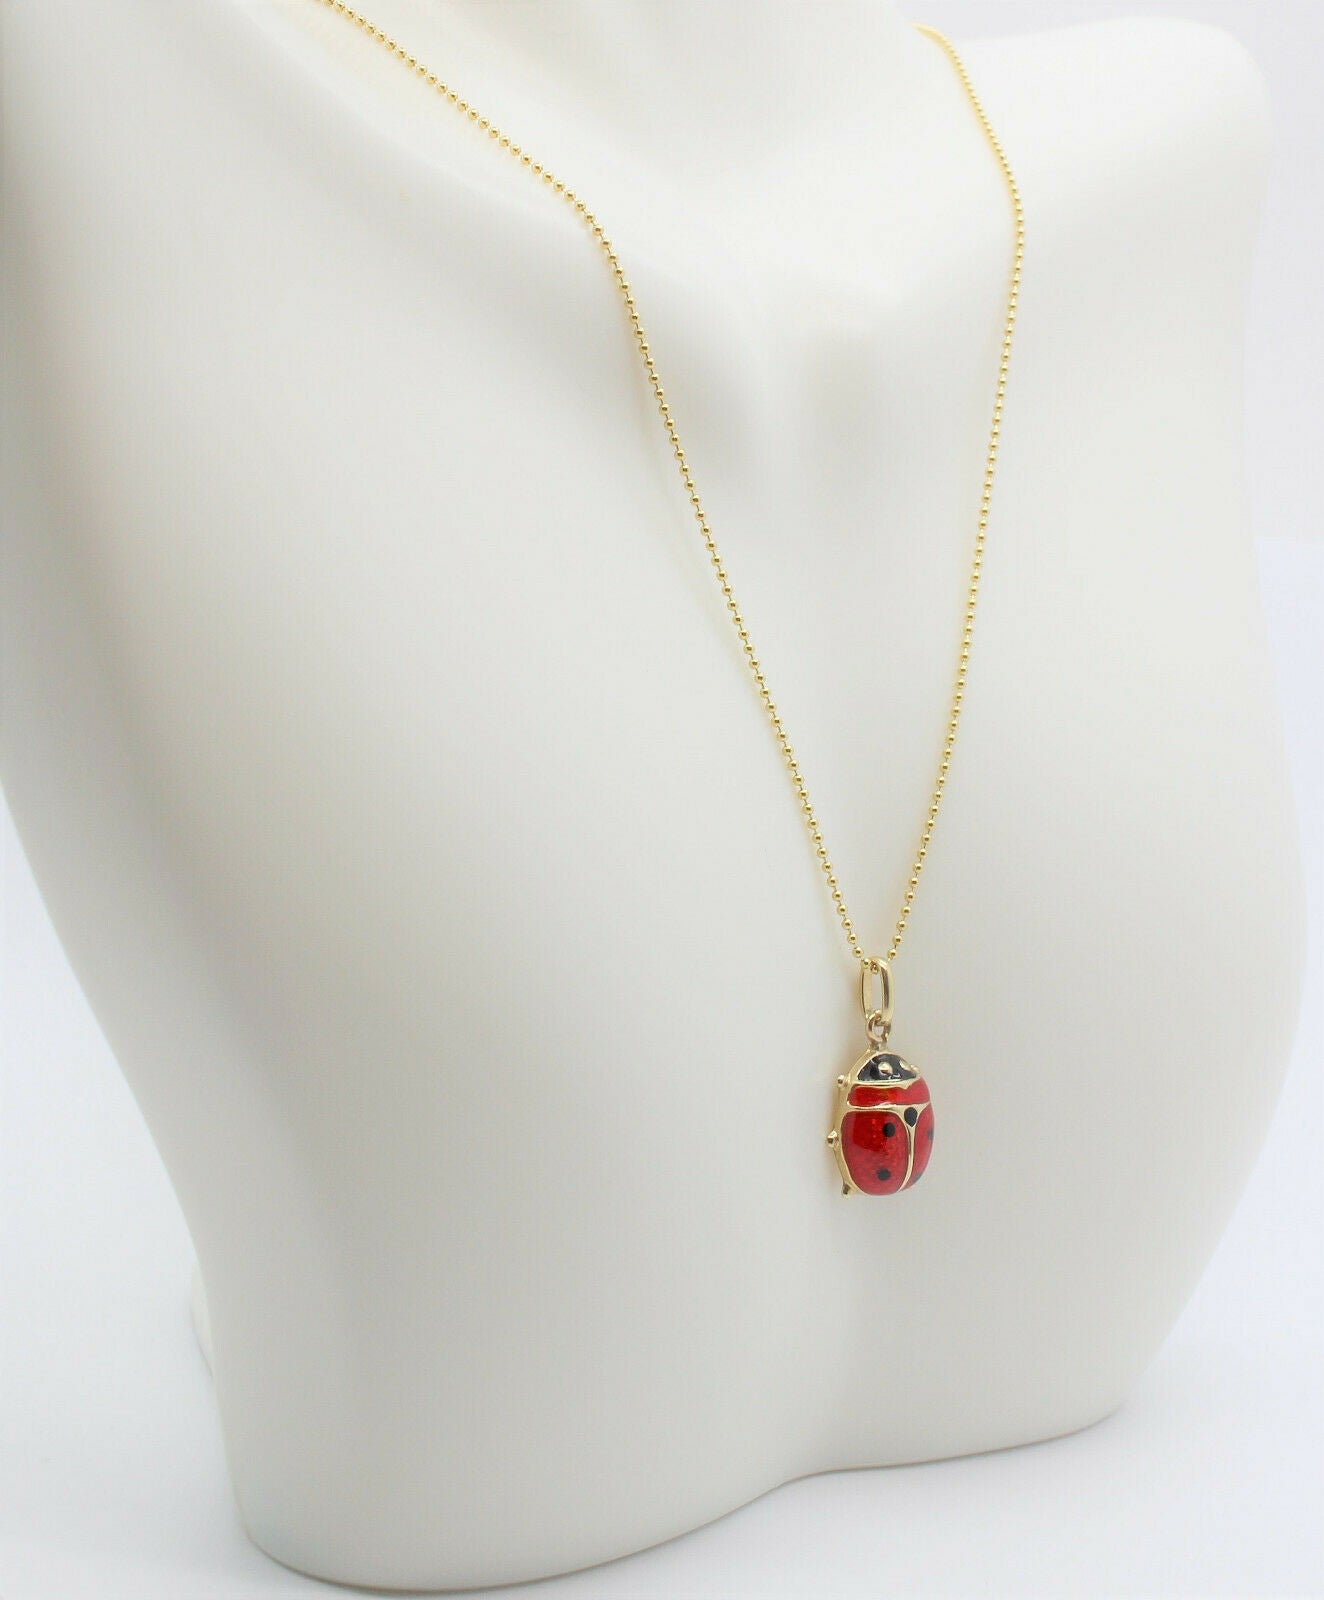 14K Gold Ladybug Necklace, Tiny Ladybug Charm Pendant, Red Enamel Good Luck  Necklace, Ladybird Lovers, Minimalist Gold Pendant - Etsy